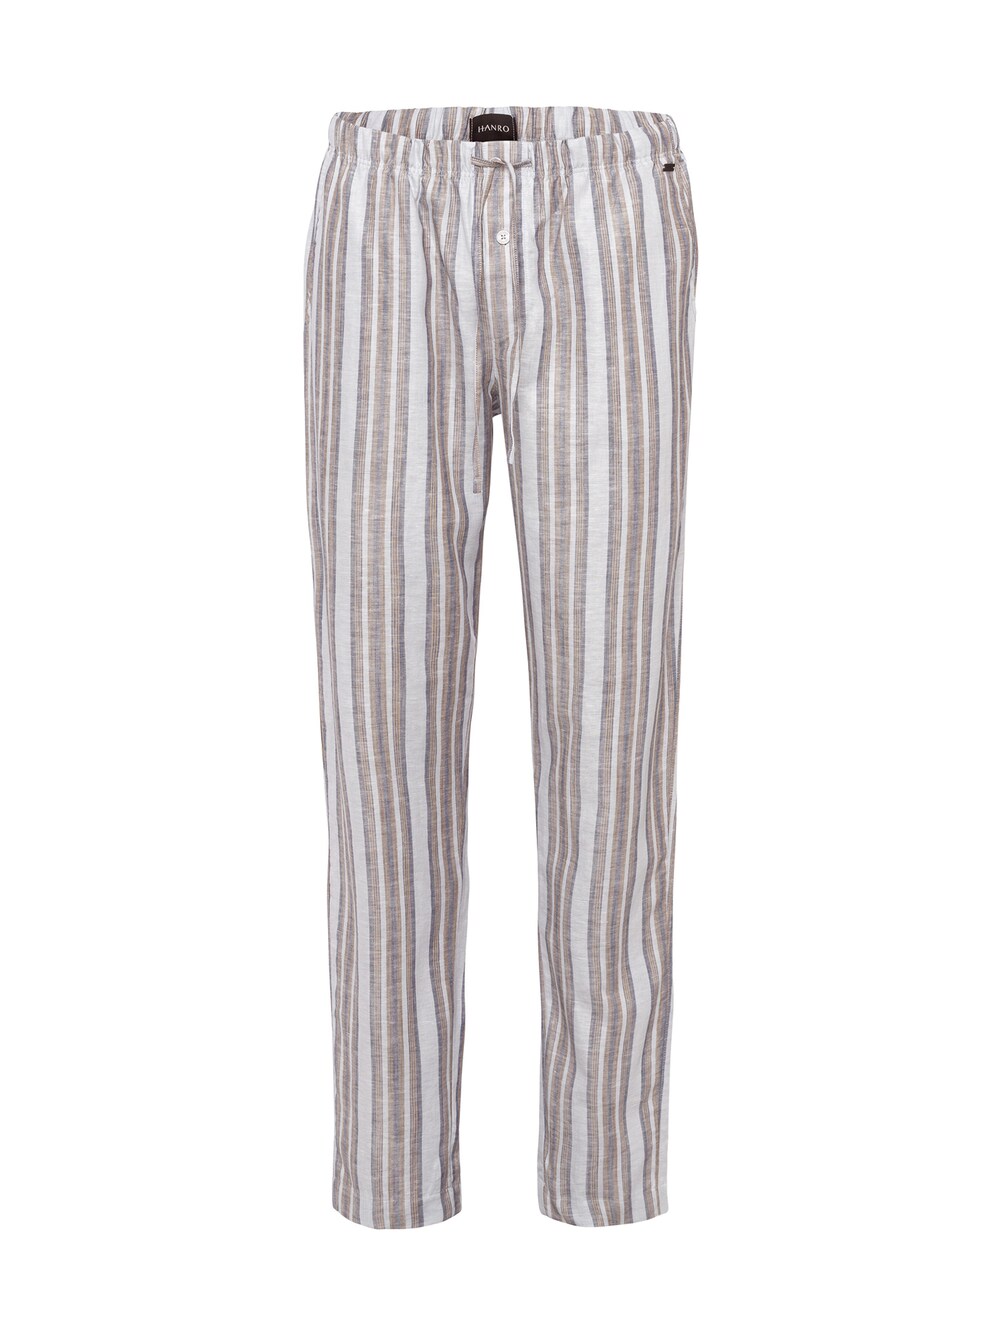 Пижамные штаны Hanro Night & Day, пестрый серый